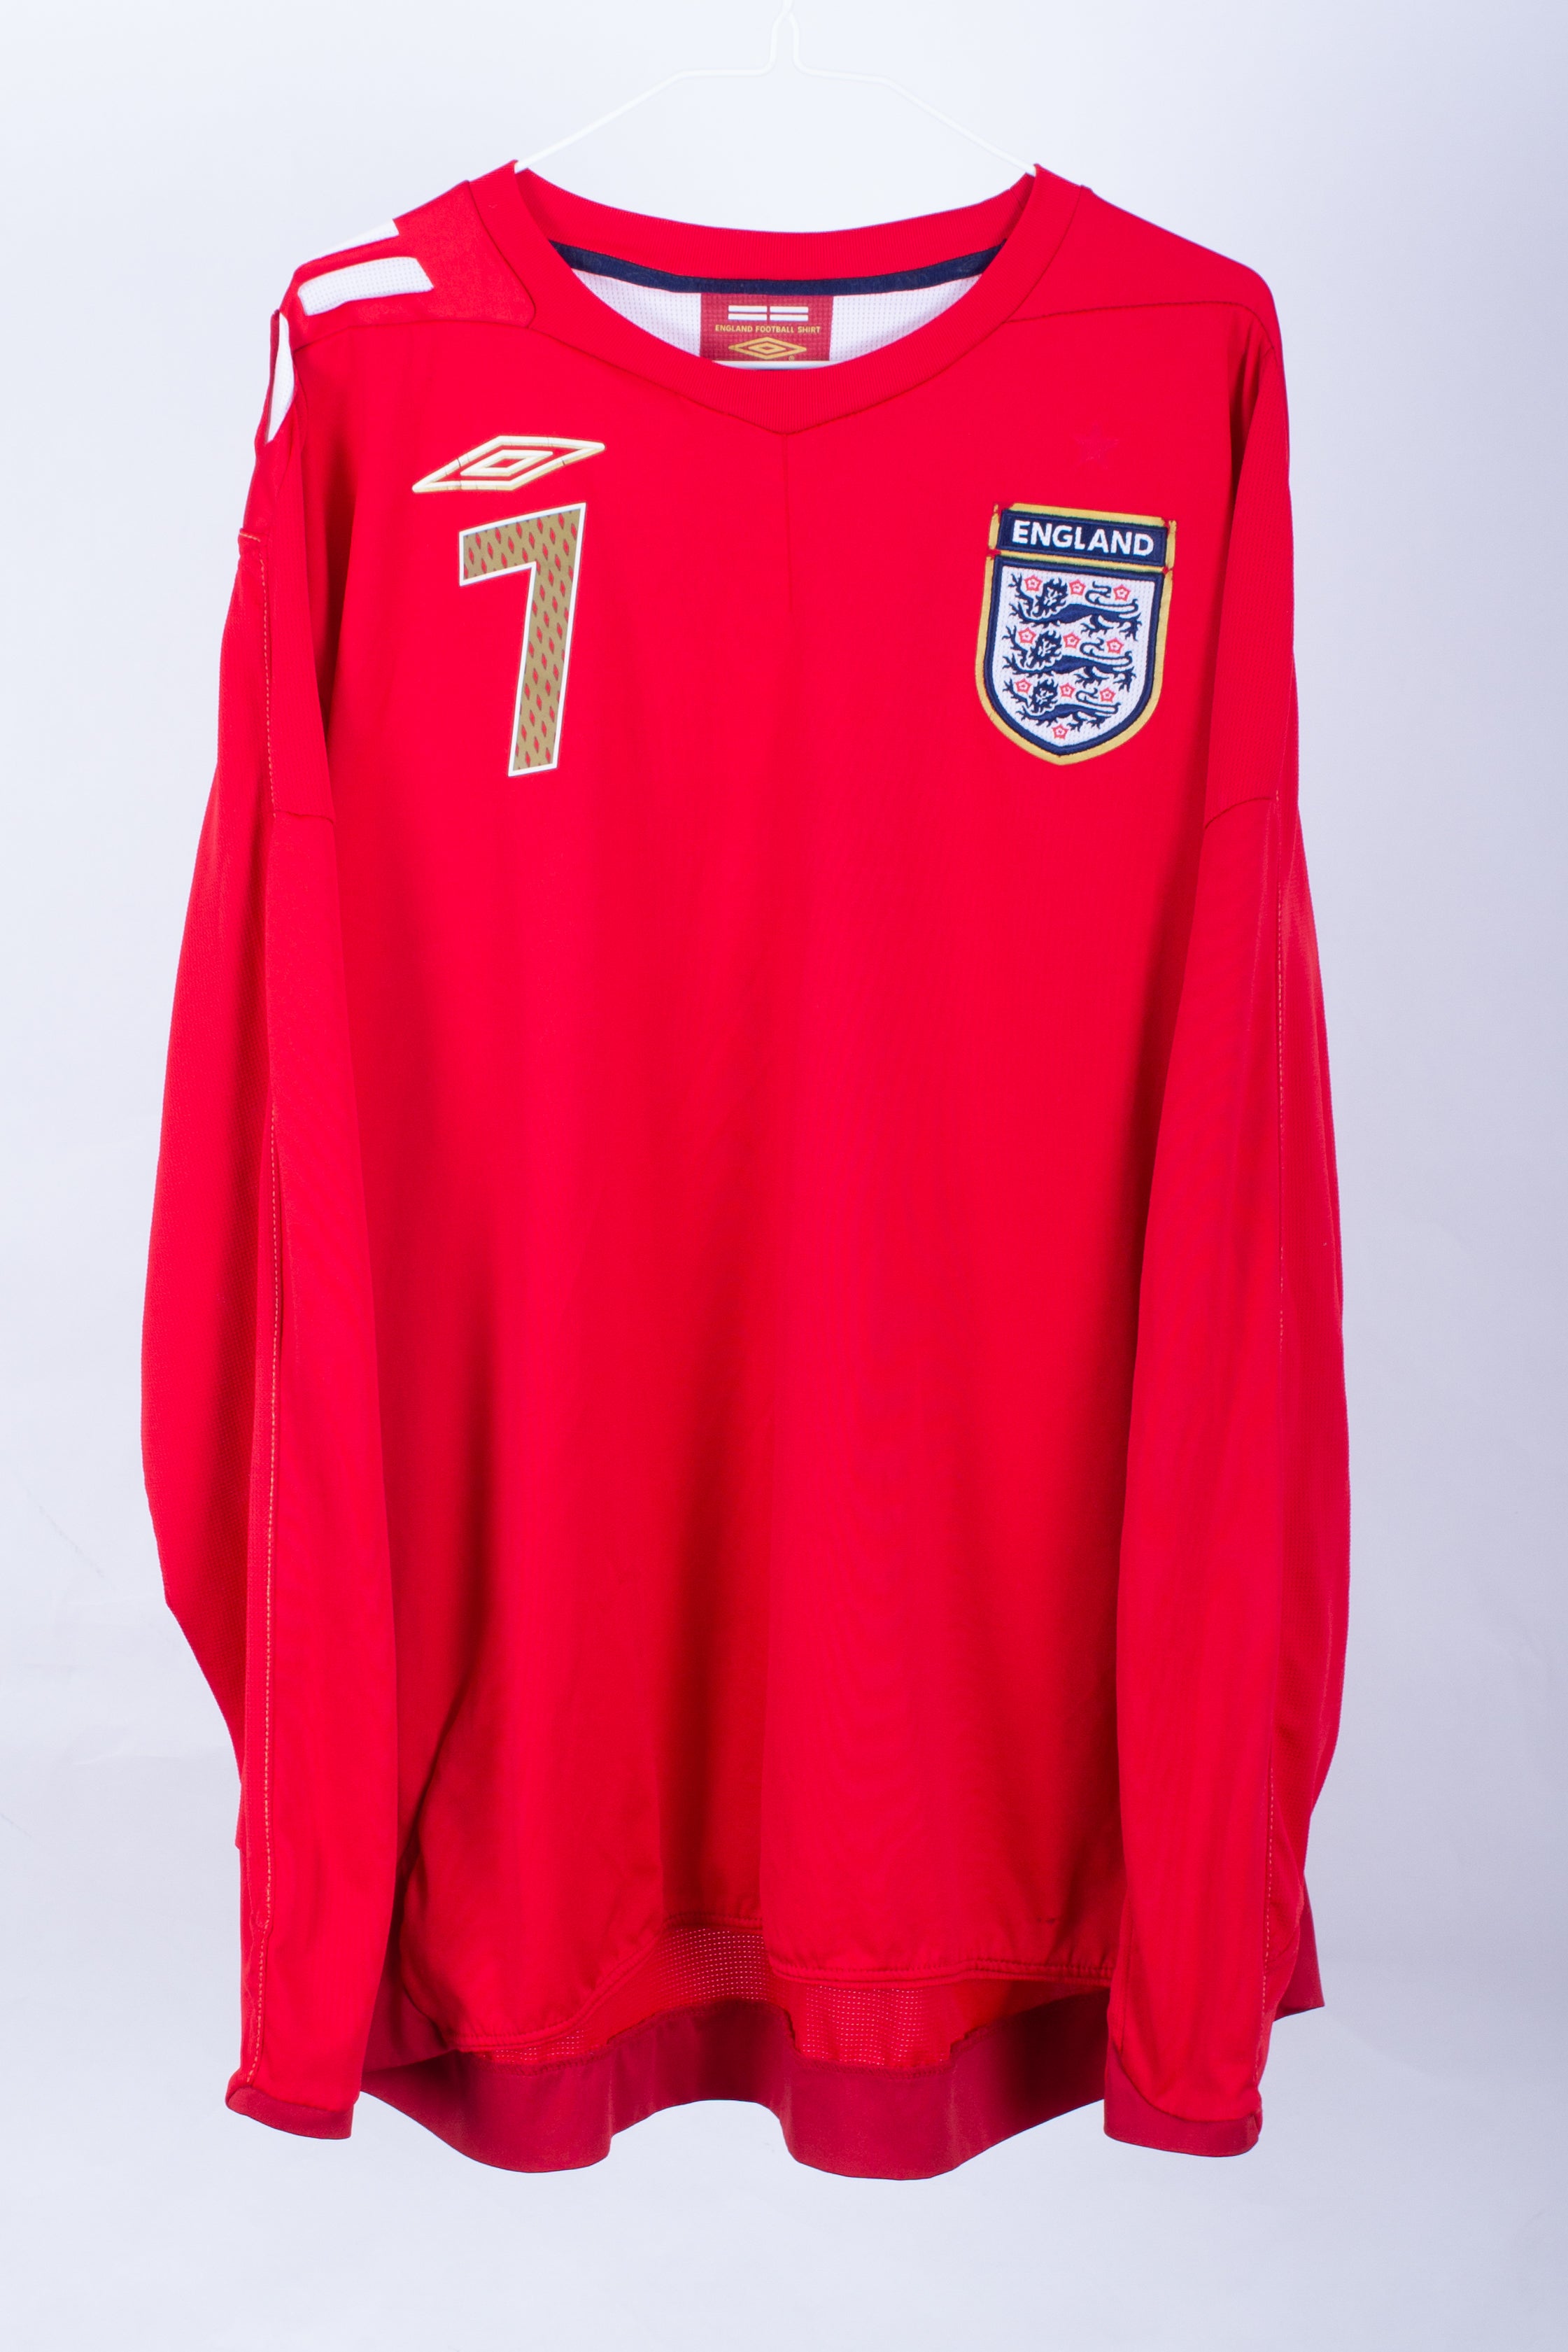 Vintage England Football Shirt, Vintage International Football Shirt, Classic England Shirt